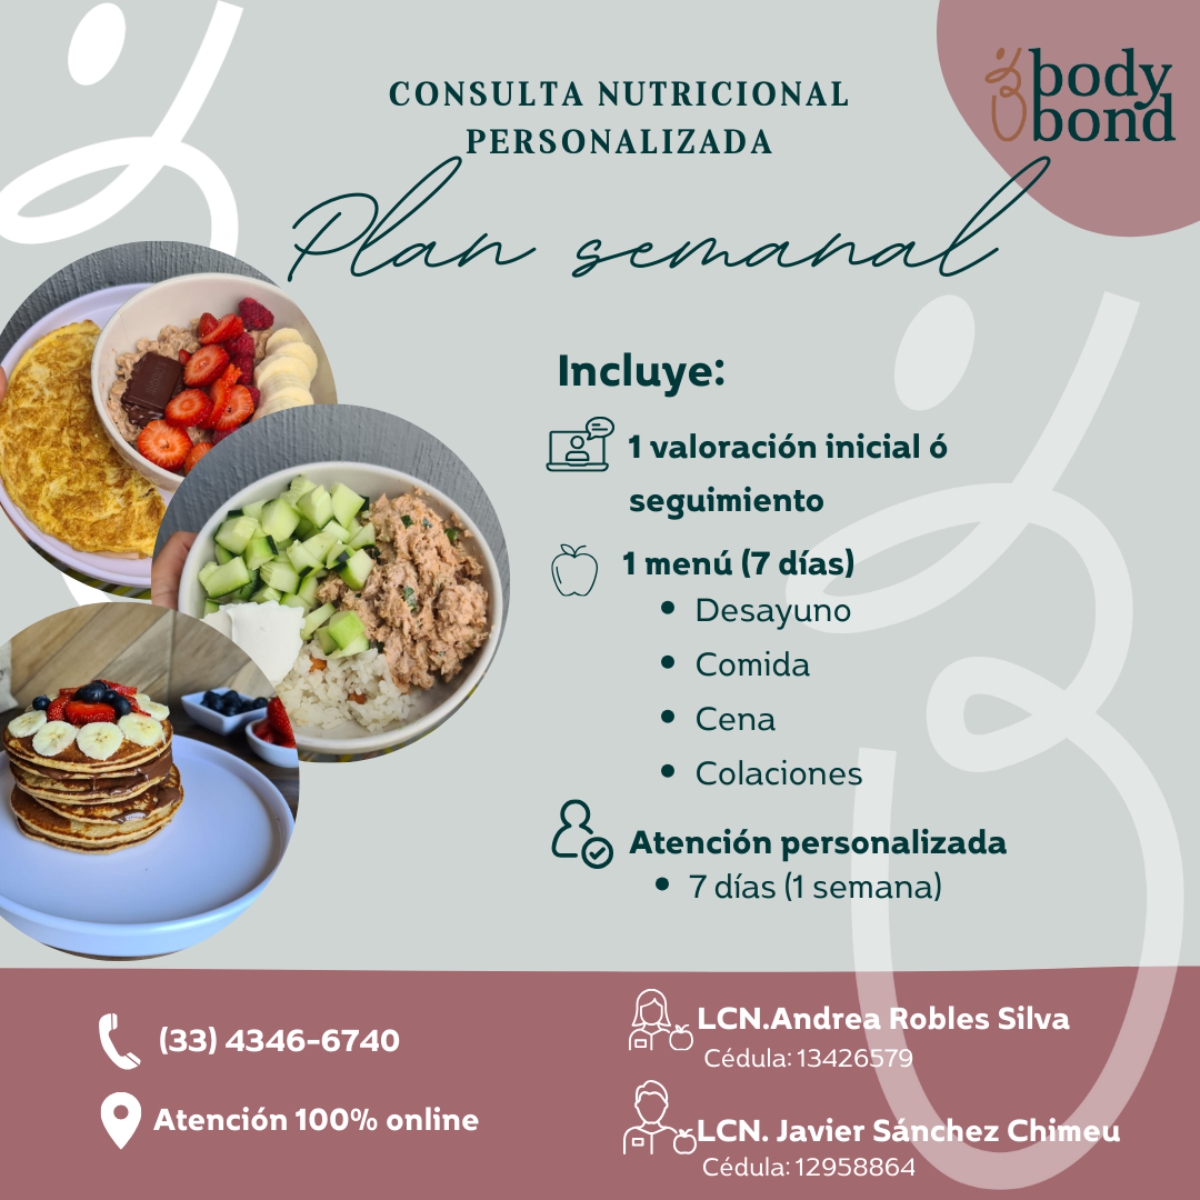 Consulta Nutricional Personalizada - Plan de Consulta Semanal